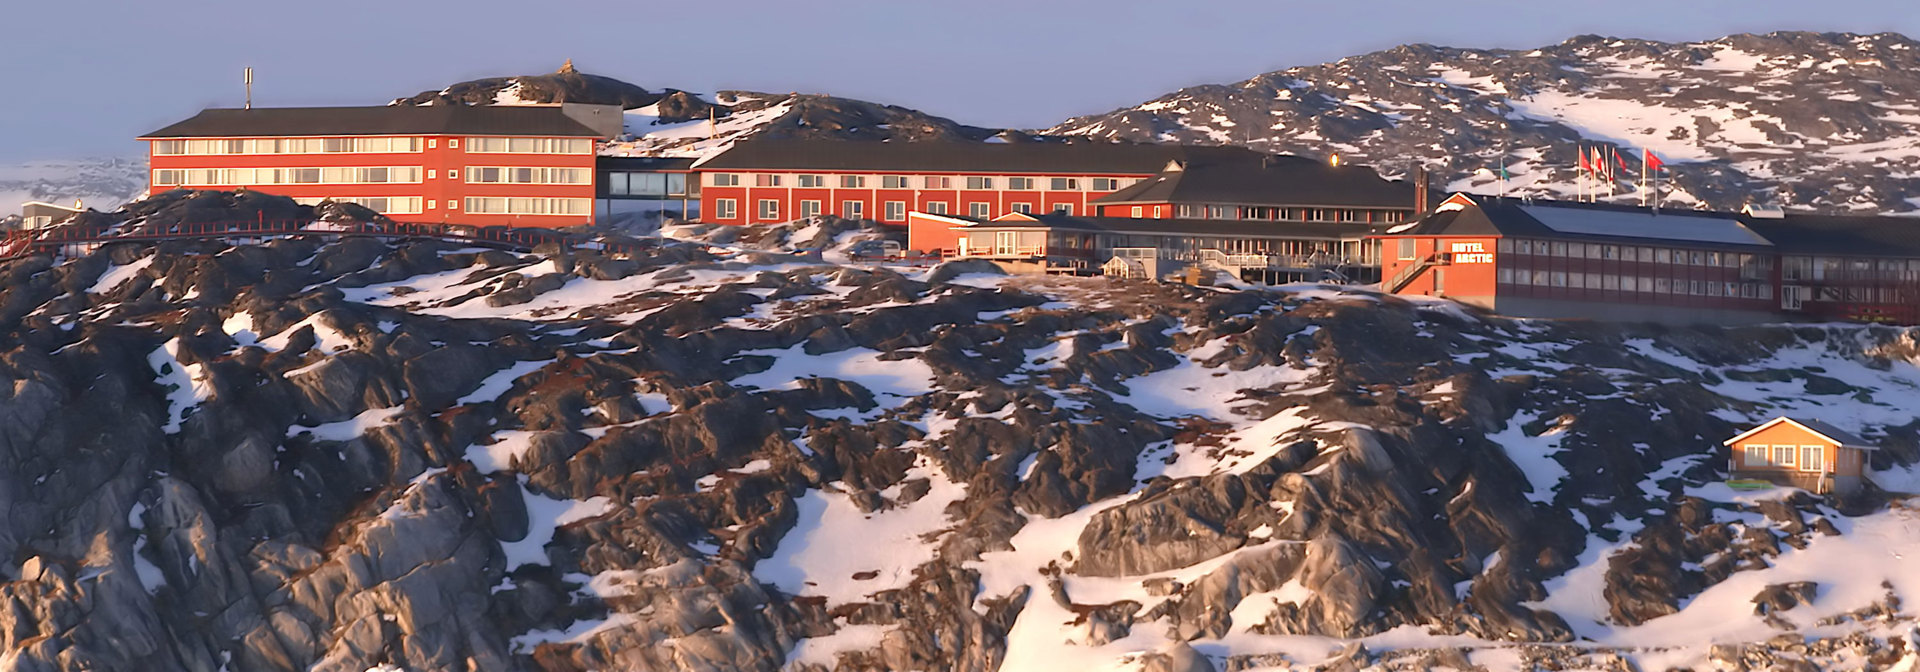 Ilulissat_Arctic_set fra fjorden_vinter